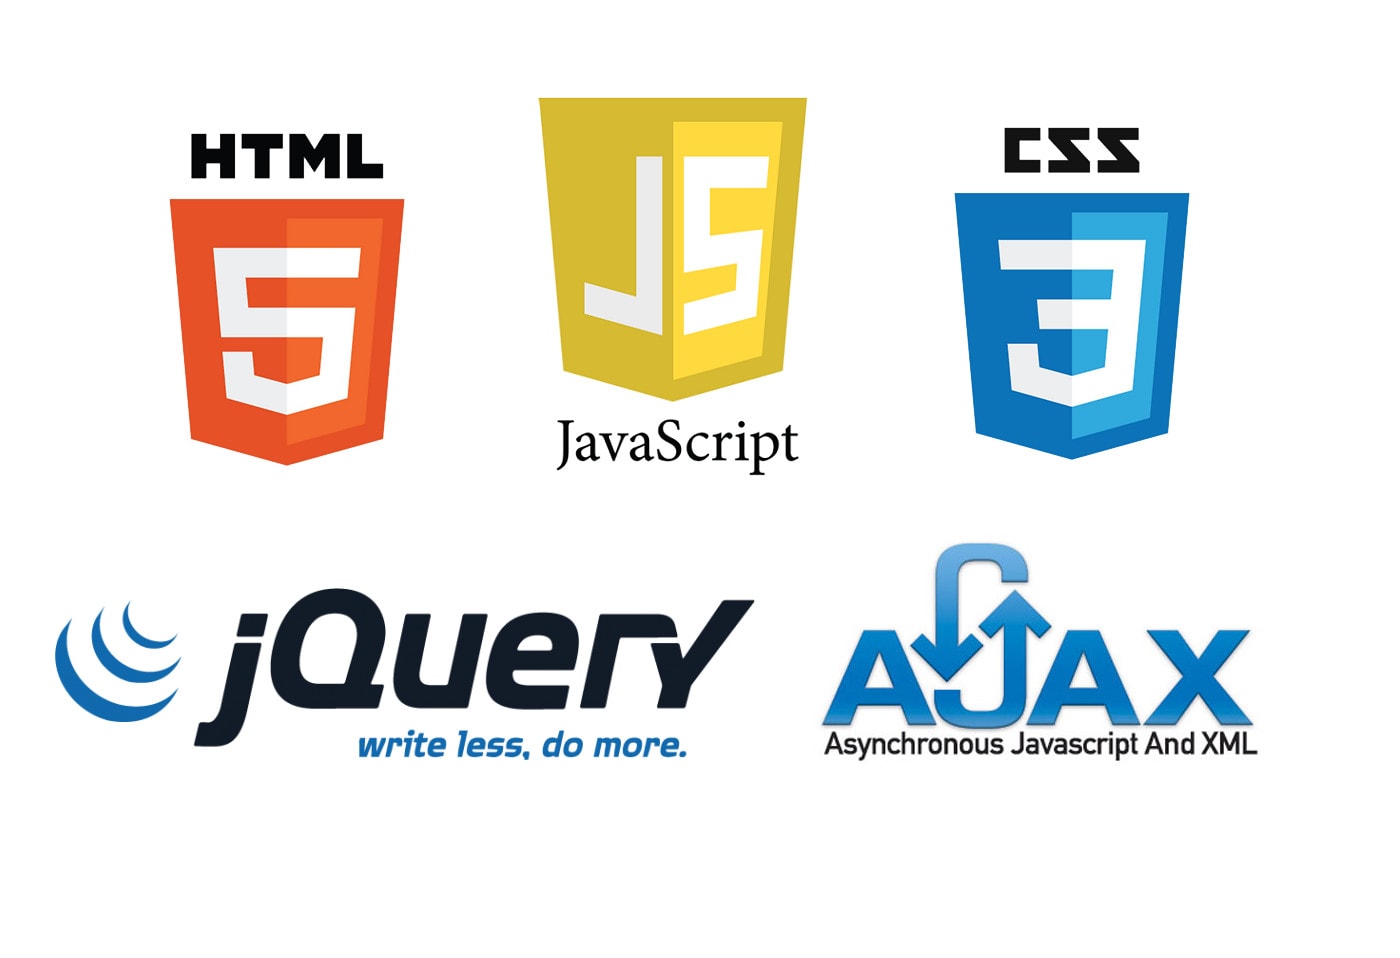 Jquery js. Ajax программирование. Ajax язык программирования. Ajax js. Html CSS JQUERY.